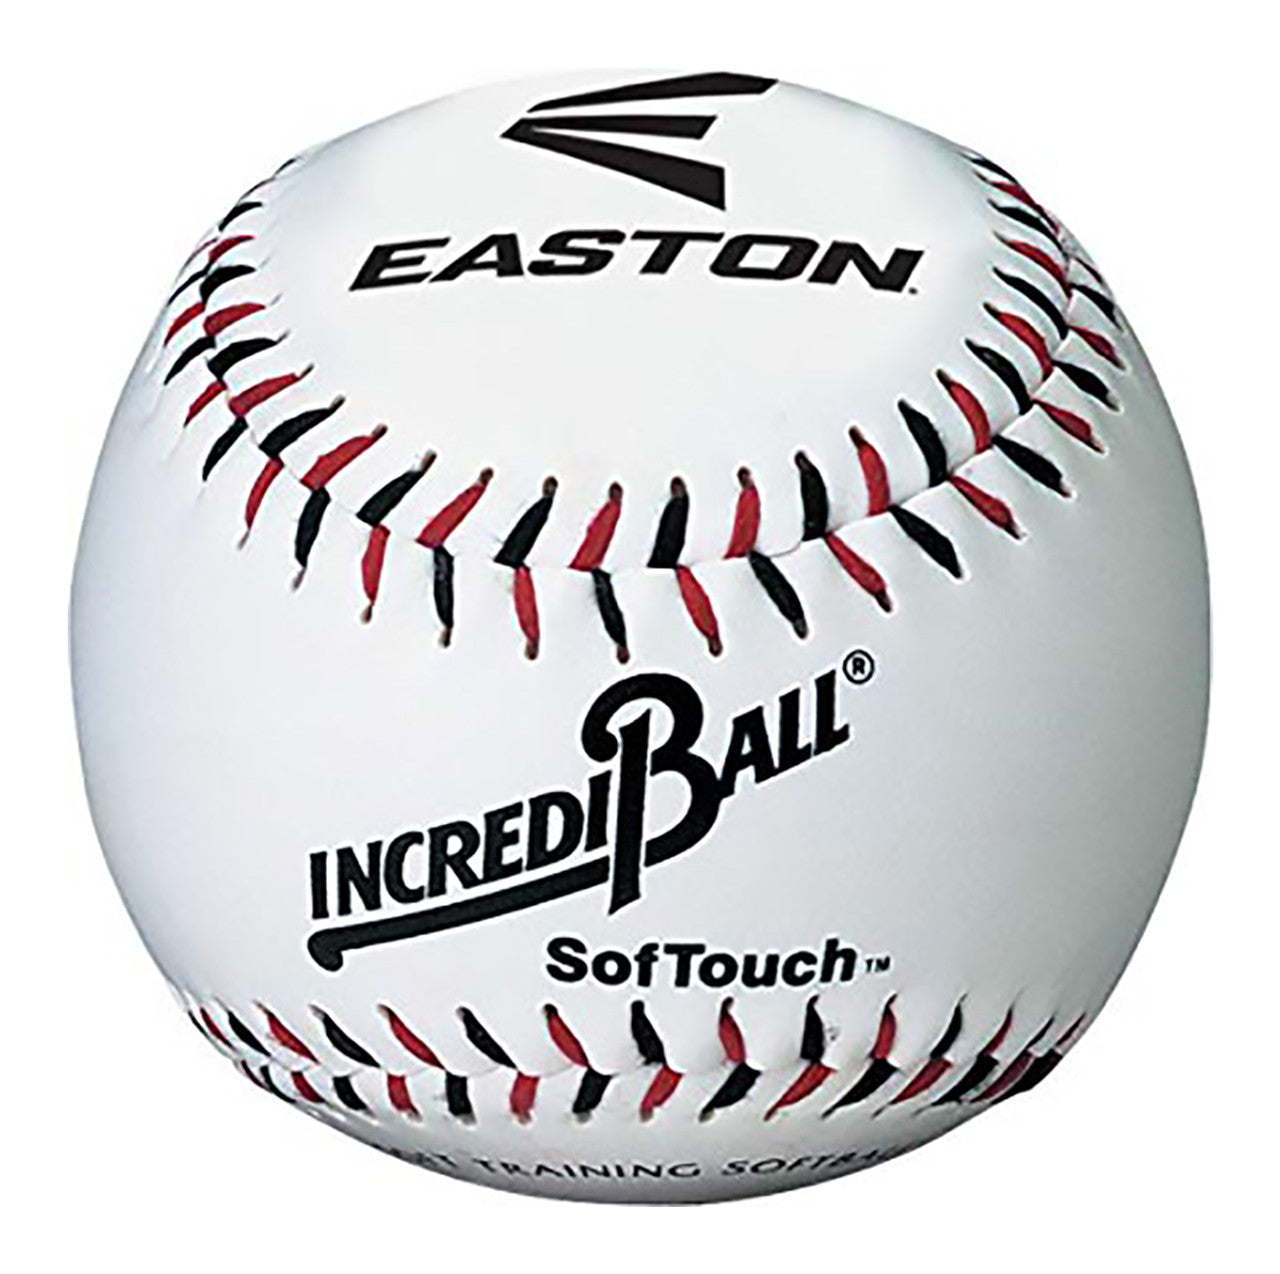 Easton 9" Soft Touch Incrediball Baseball